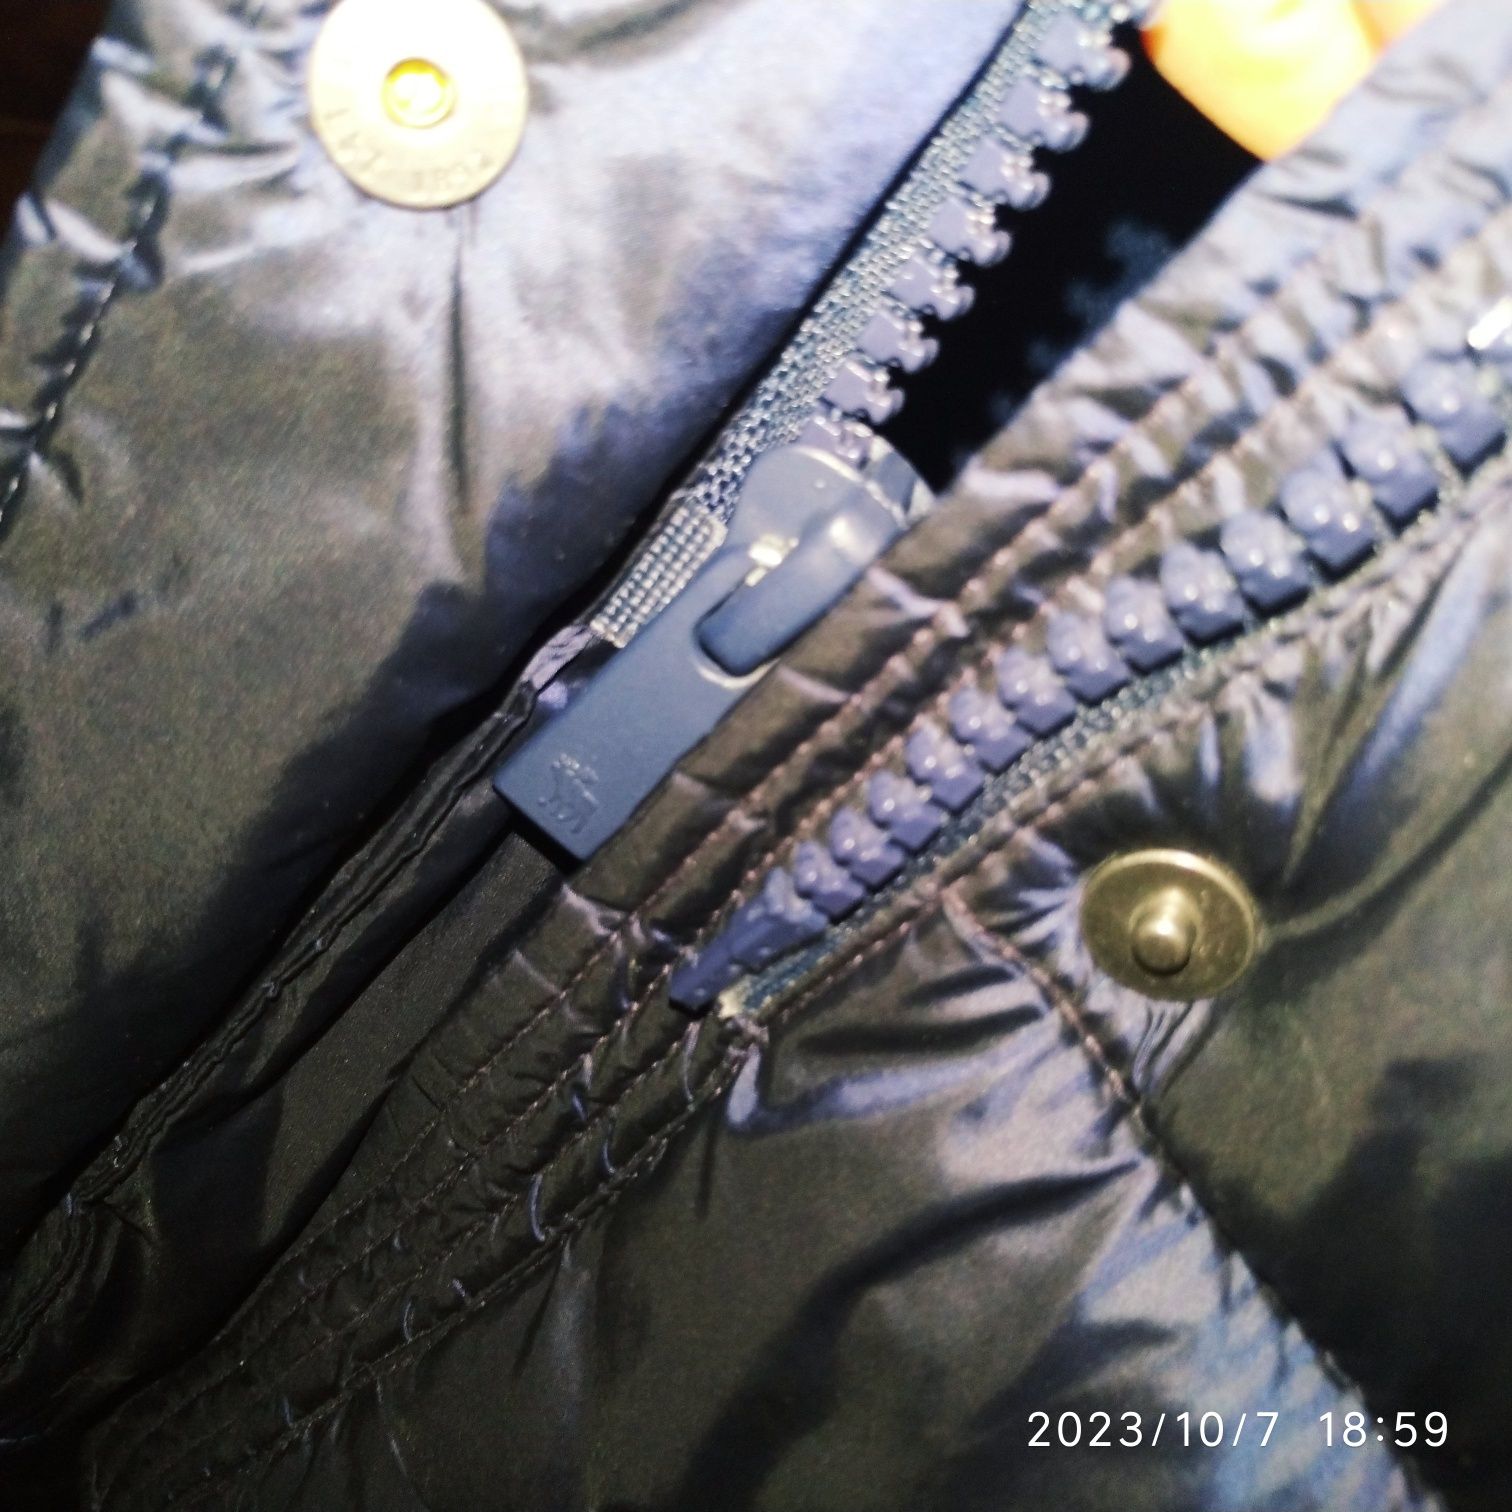 Пуховик куртка Abercrombie 155 см